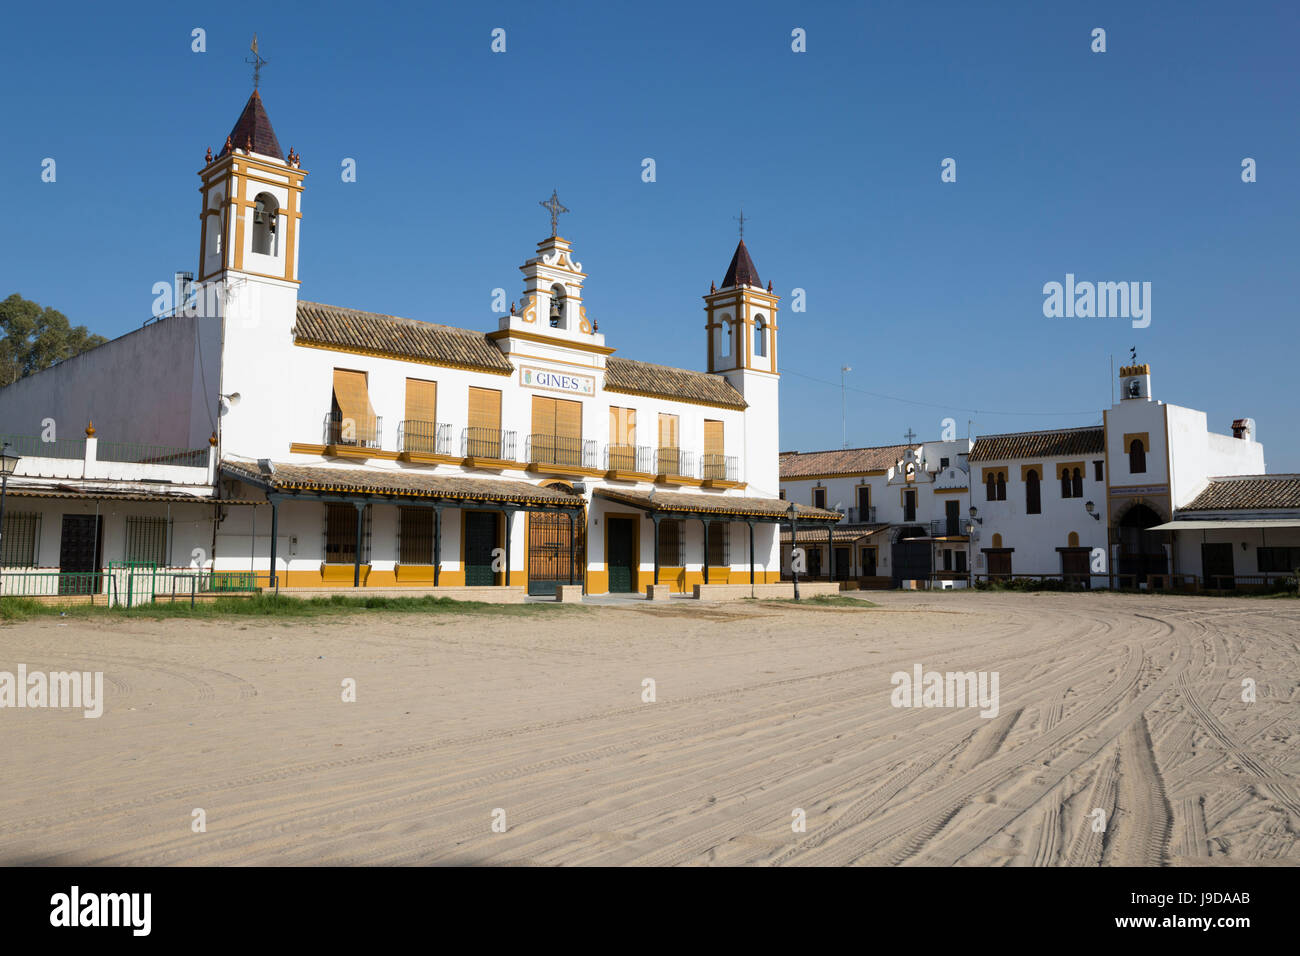 Las calles de arena y casas de hermandad, El Rocío, la provincia de Huelva, Andalucía, España, Europa Foto de stock